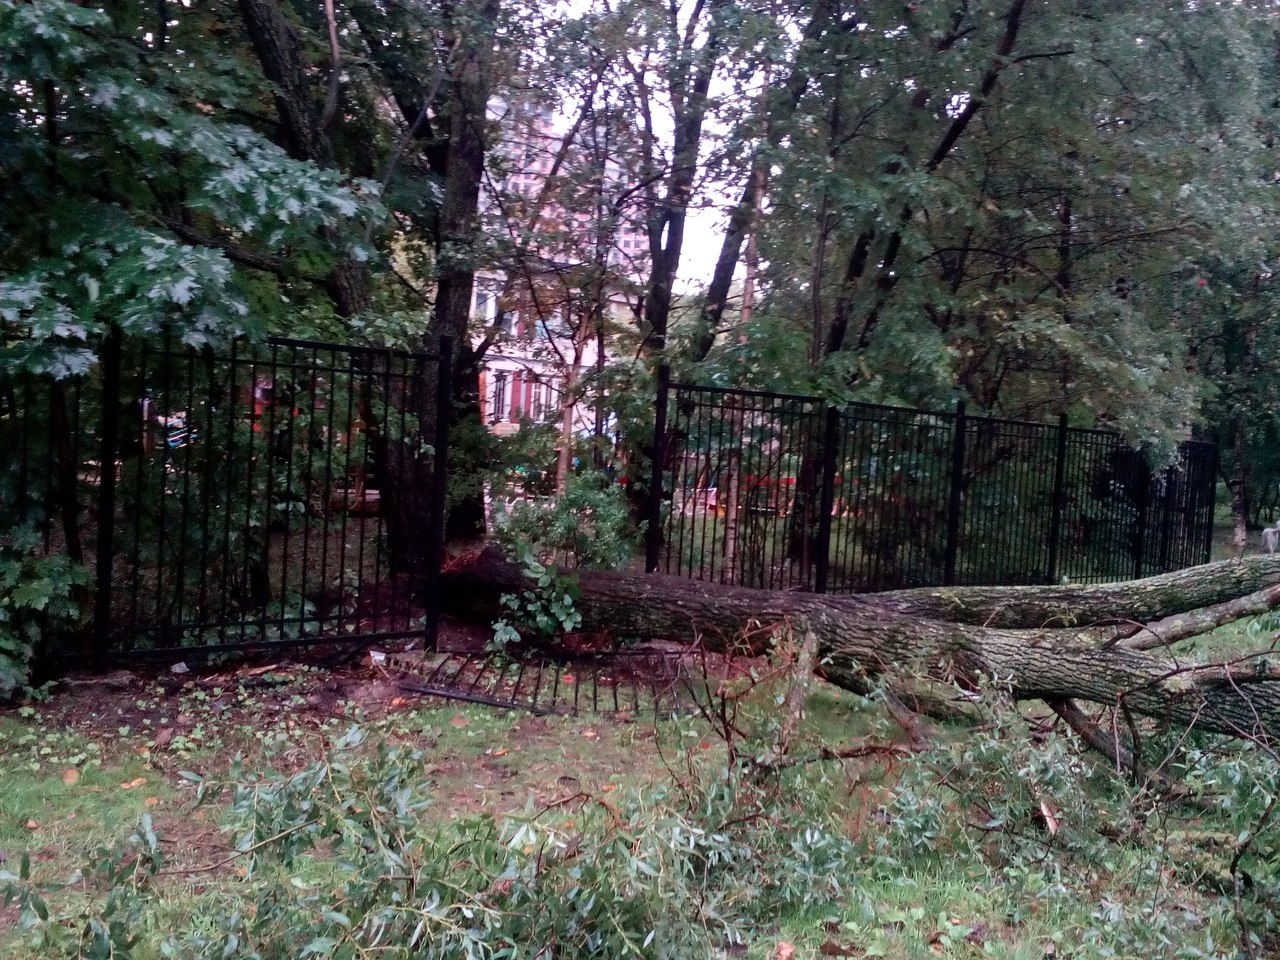 Рухнувшее дерево раздавило машину на Васильевском острове